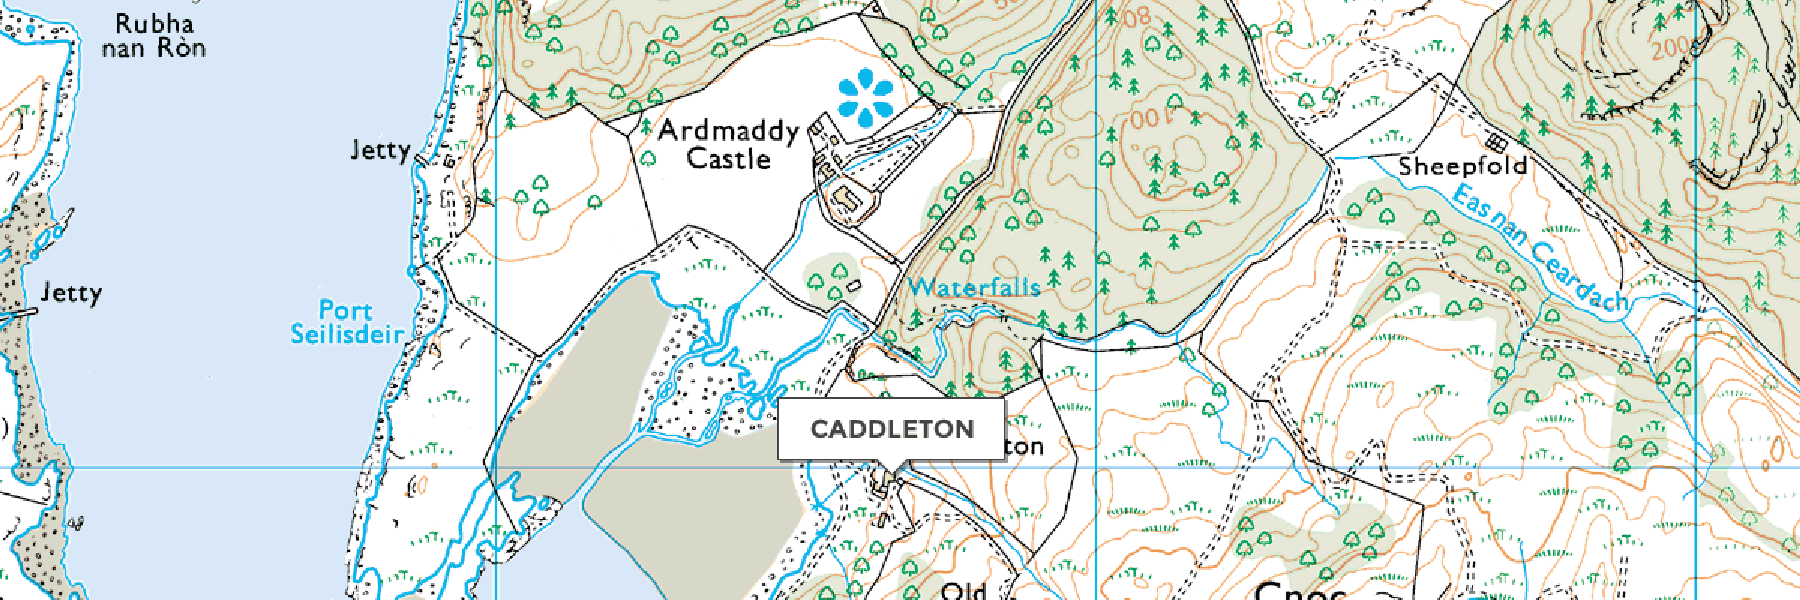 Caddleton Map